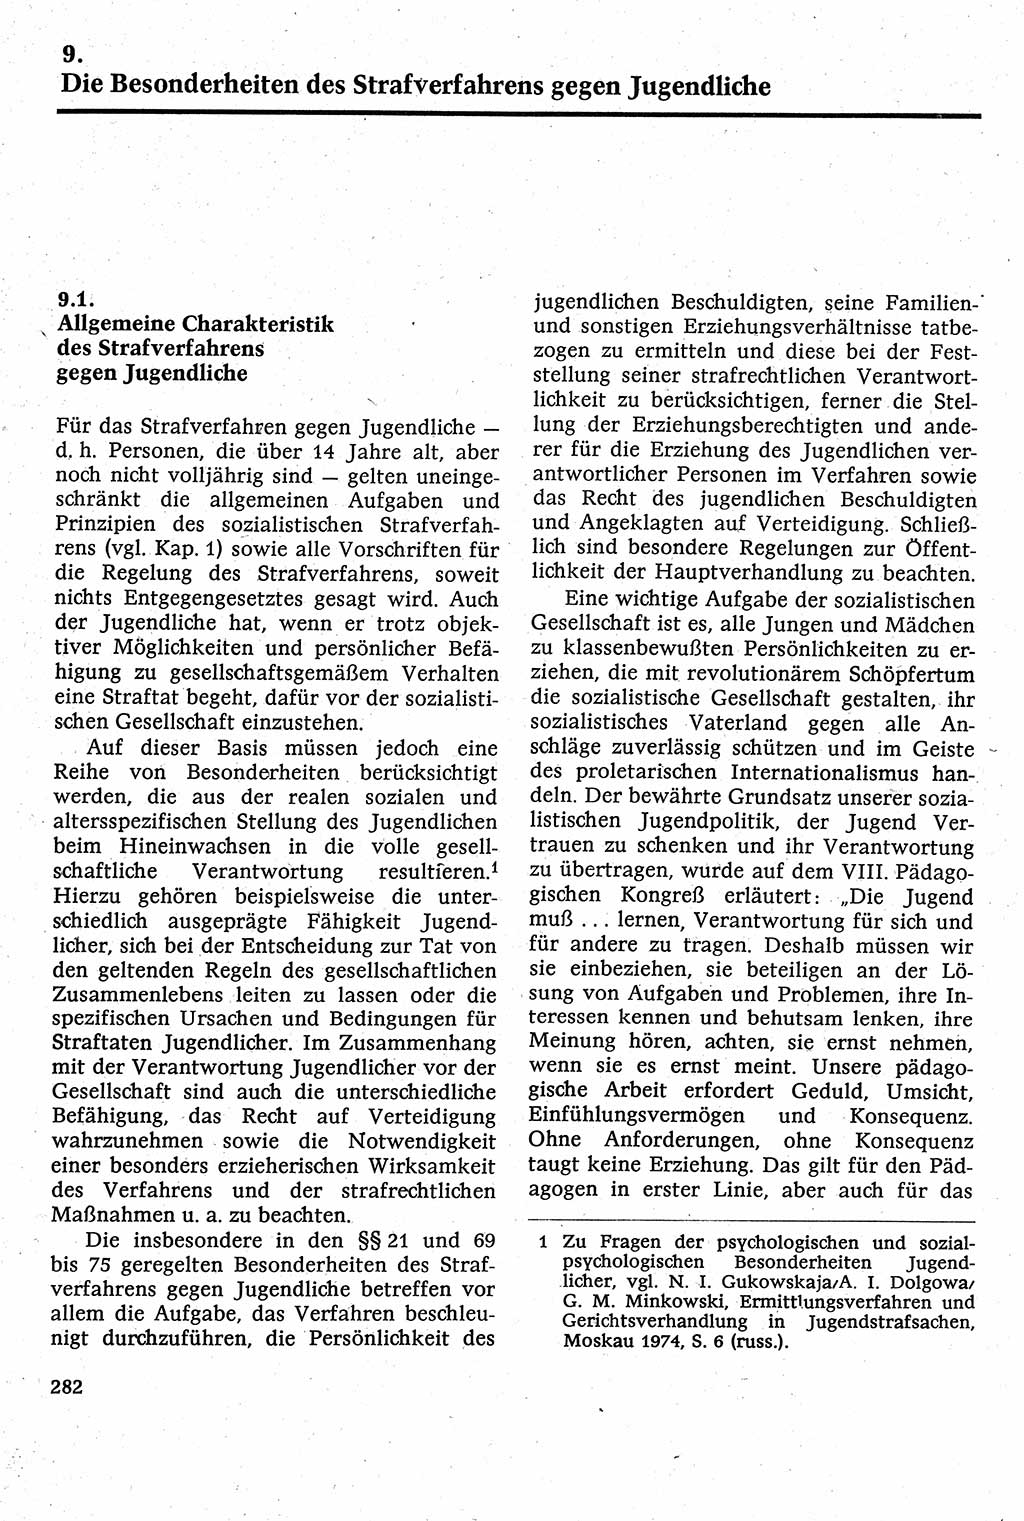 Strafverfahrensrecht [Deutsche Demokratische Republik (DDR)], Lehrbuch 1982, Seite 282 (Strafverf.-R. DDR Lb. 1982, S. 282)